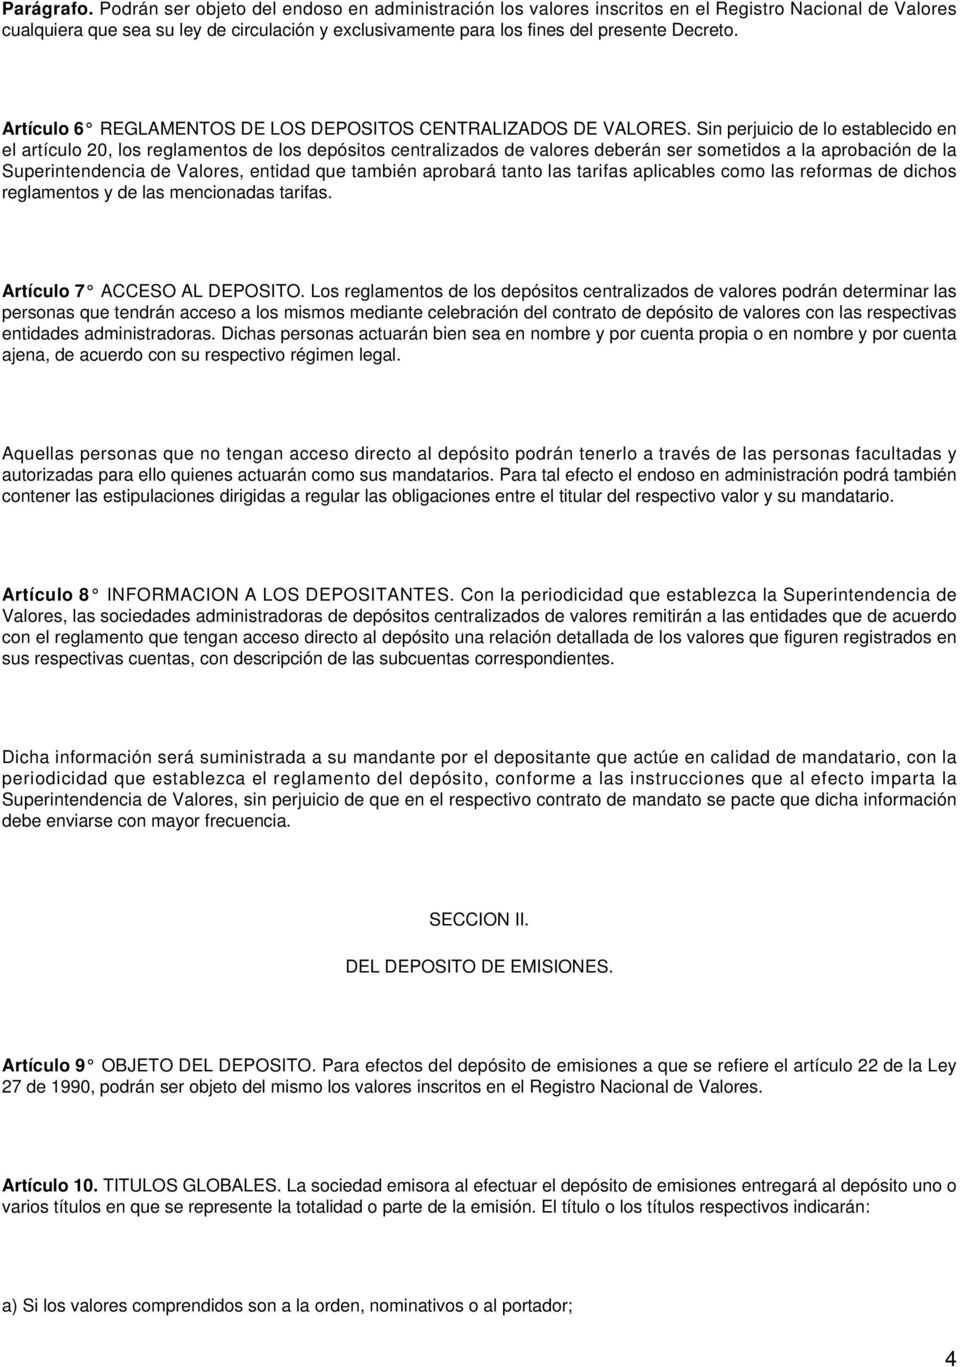 Artículo 6 REGLAMENTOS DE LOS DEPOSITOS CENTRALIZADOS DE VALORES.